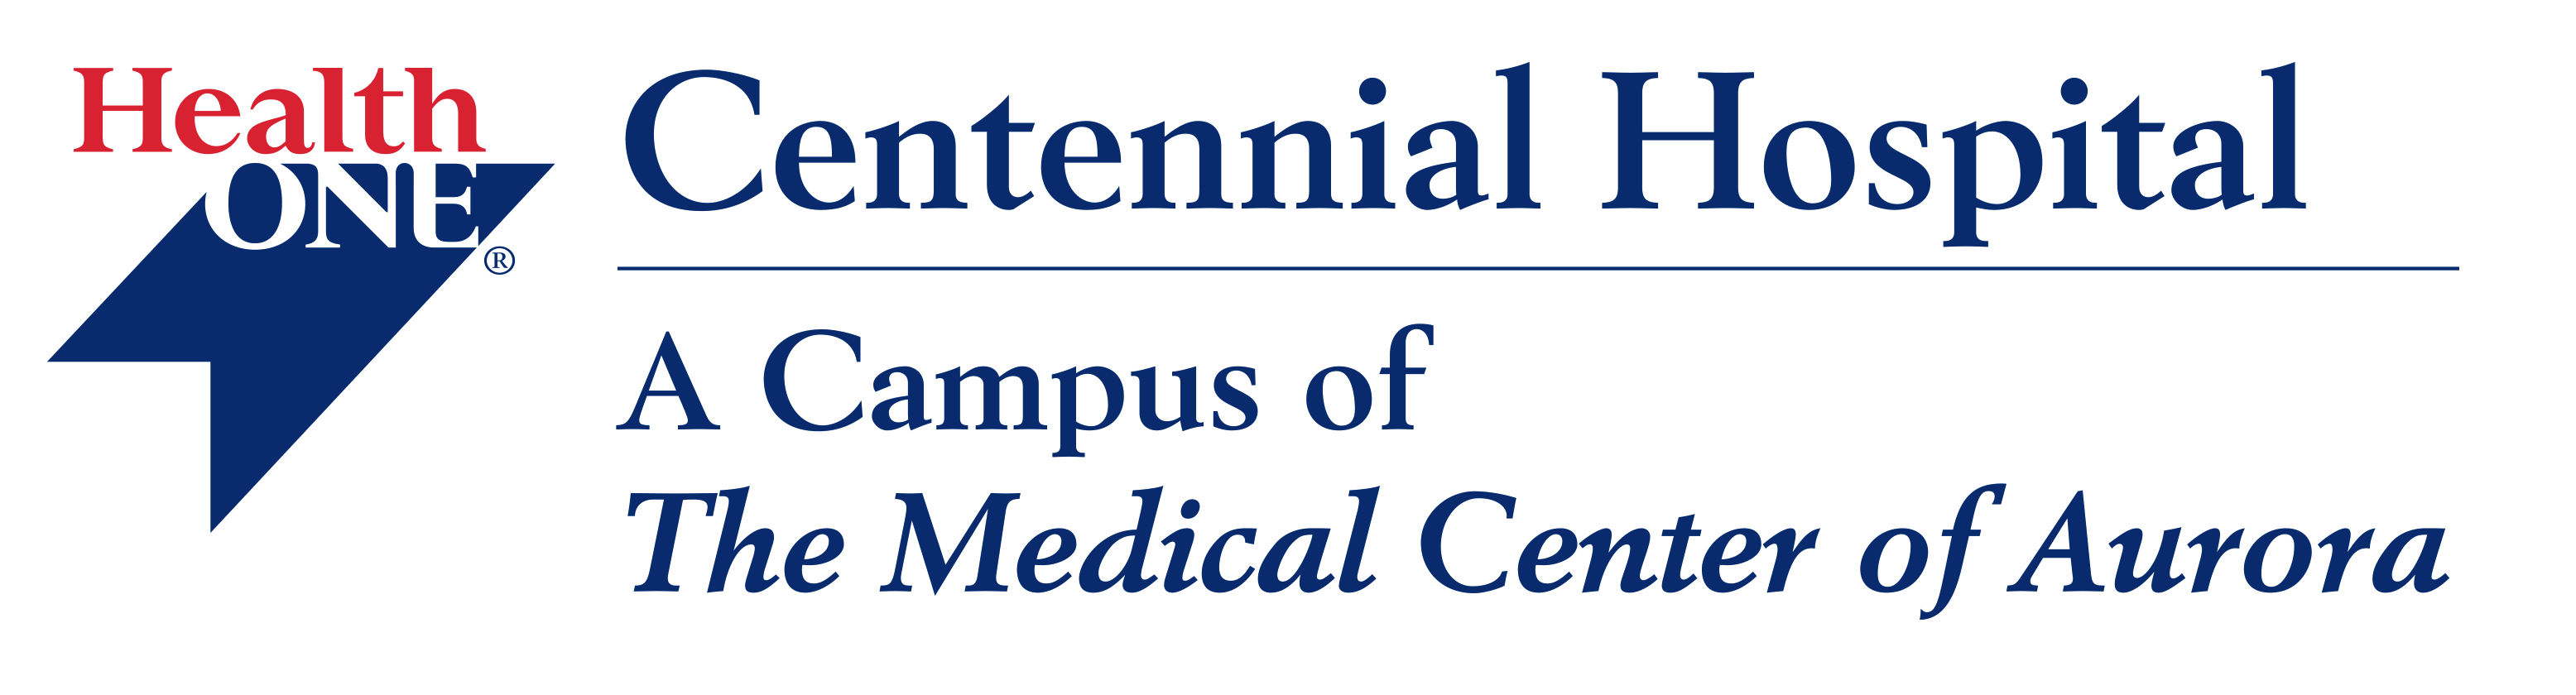 Centennial Hospital - HealthONE